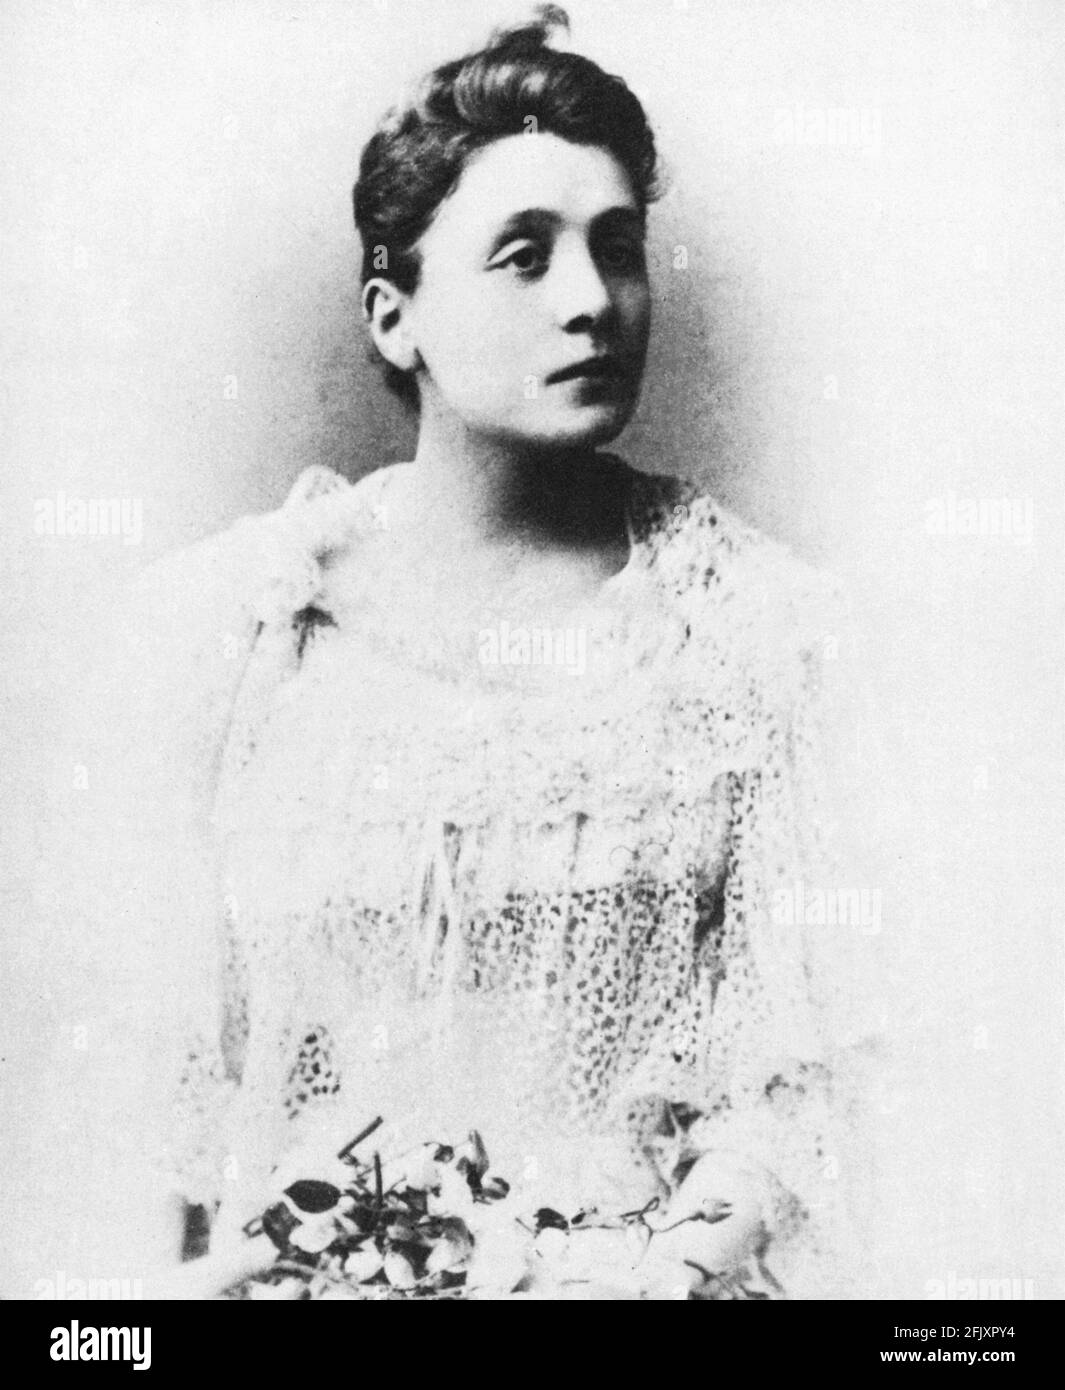 1880 ca. , ITALIA : la più celebre attrice italiana ELEONORA DUSE ( 1858 - 1924 ) quando era giovane , amante del poeta GABRIELE D'ANNUNZIO - TEATRO - TEATRO - DANNUNZIO - D'ANNUNZIO - divina - attrice teatrale - pizzo - pizzo - chignon --- Archivio GBB Foto Stock